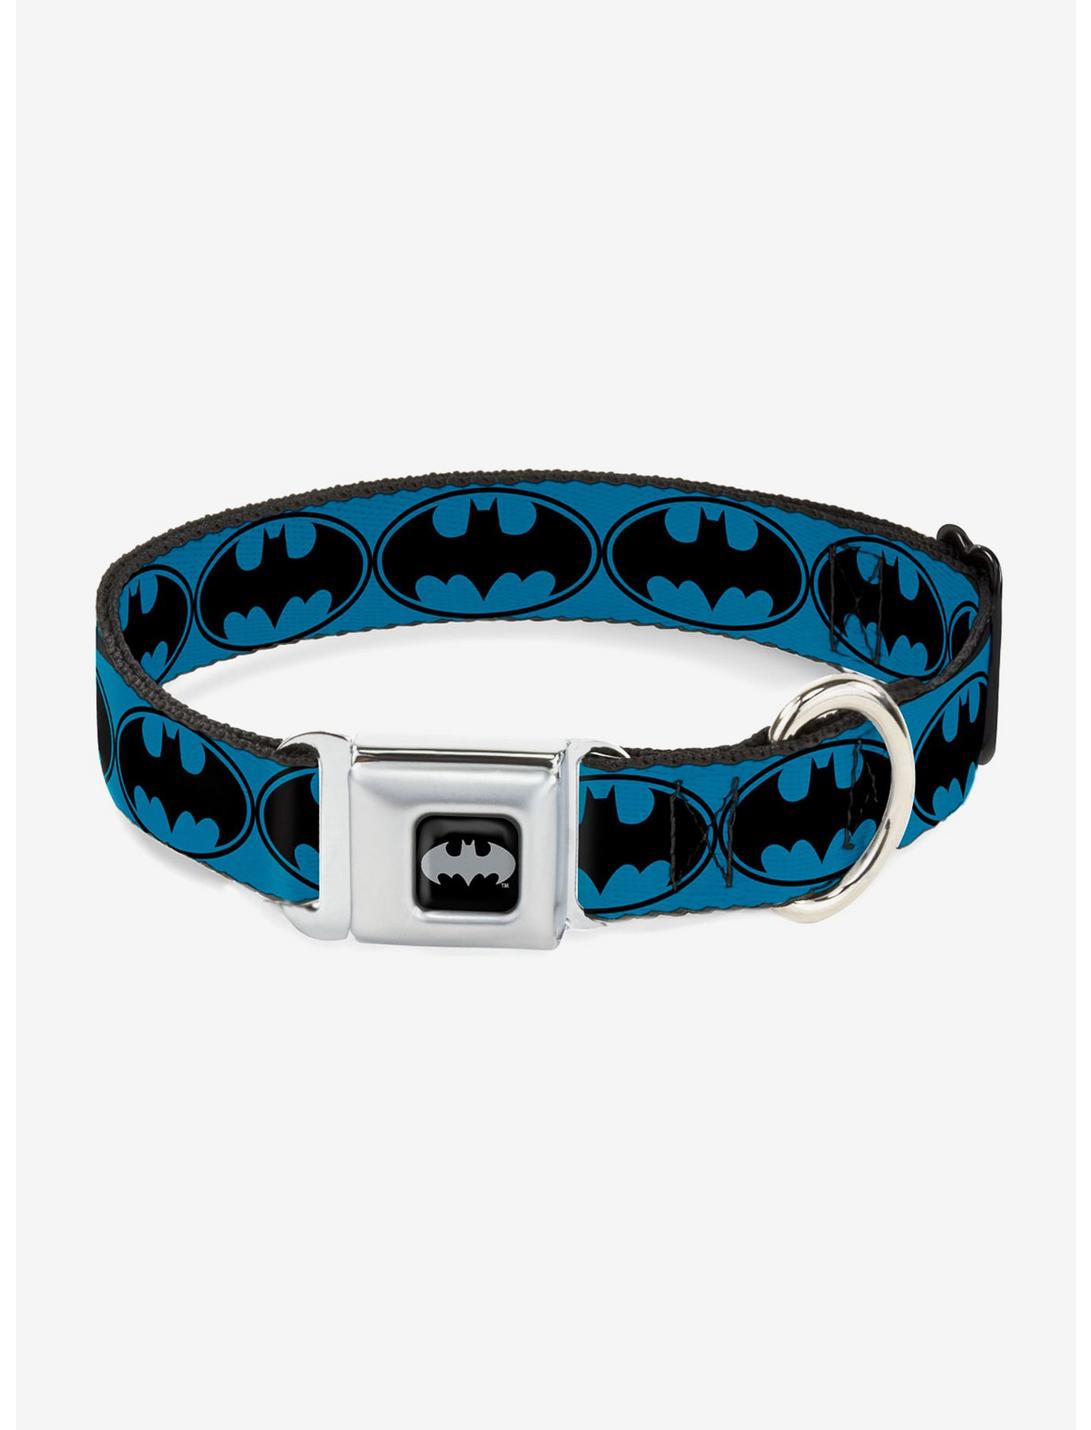 DC Comics Justice League Bat Signal 3 Seatbelt Buckle Pet Collar, BLUE, hi-res